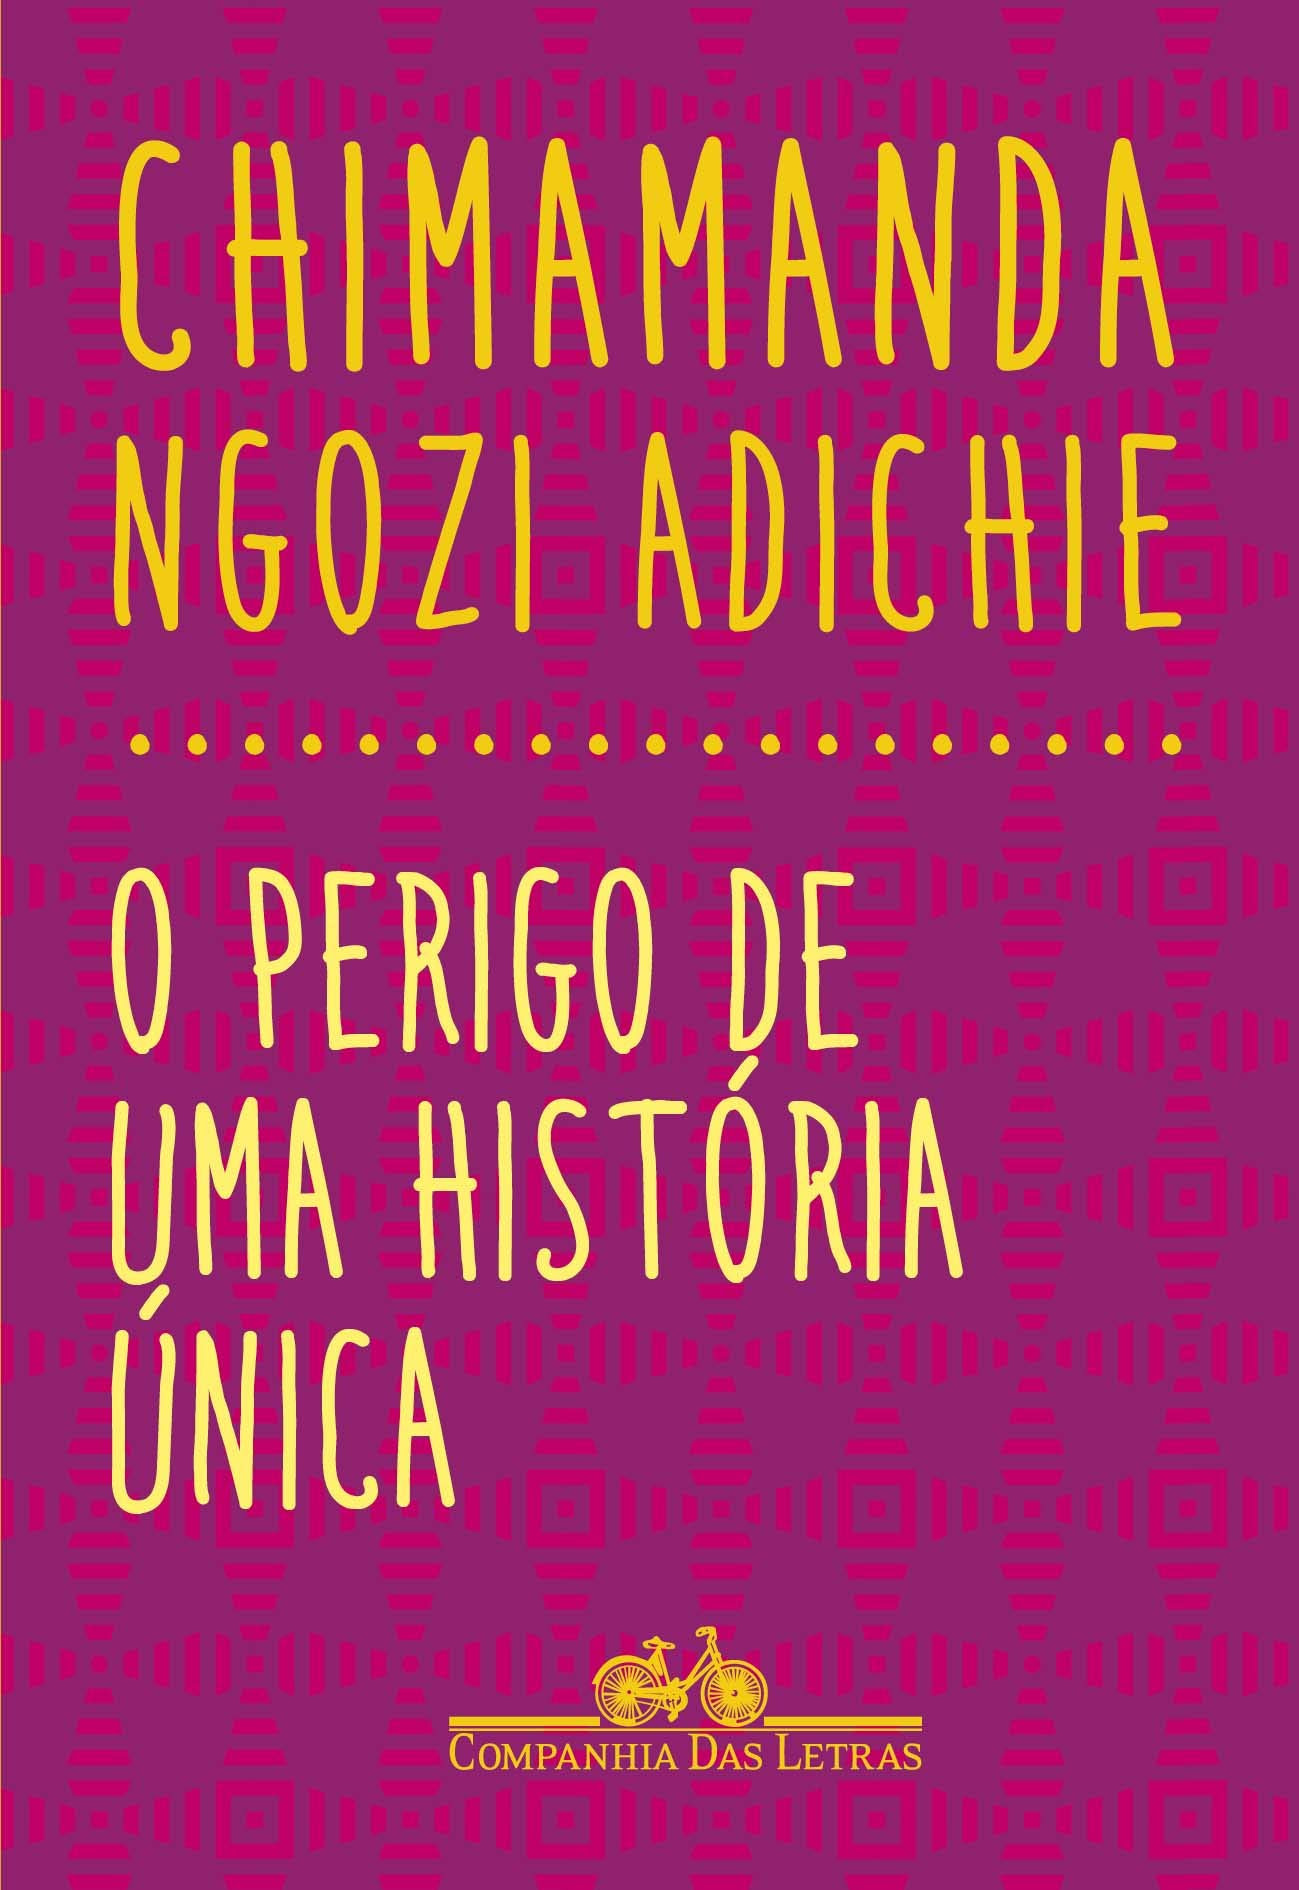 Capa de livro com fundo roxo e os escrito em tons de amarelo “Chimamanda Ngozi Adichie” e “O perigo de uma história única”. Abaixo a logomarca da Companhia das Letras.